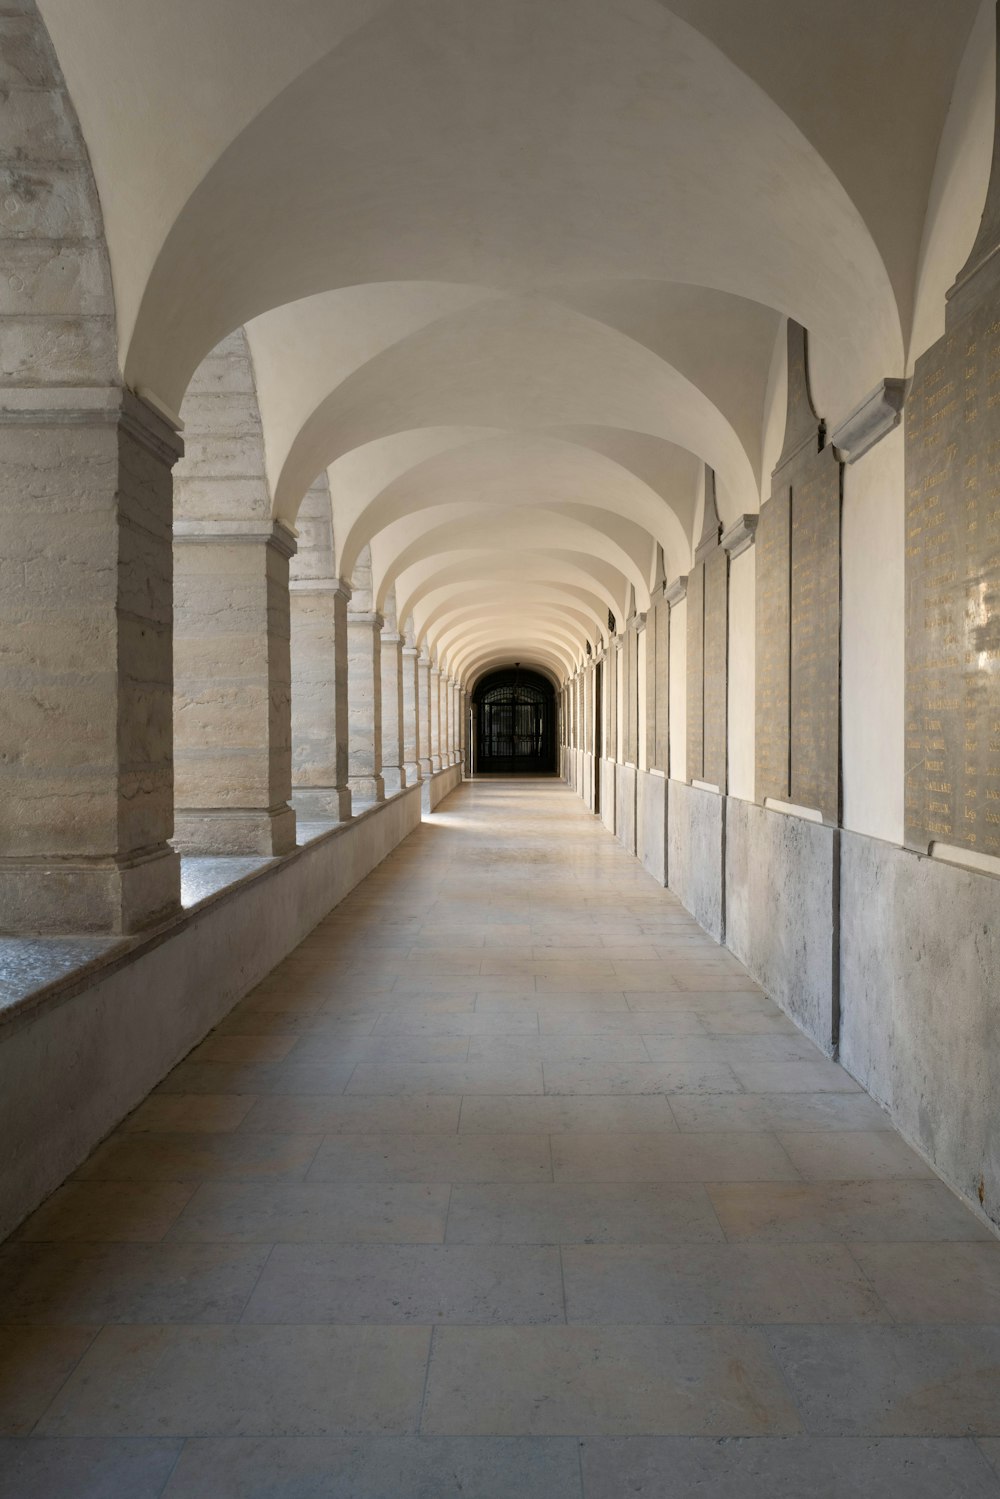 um longo corredor com arcos e uma luz no final